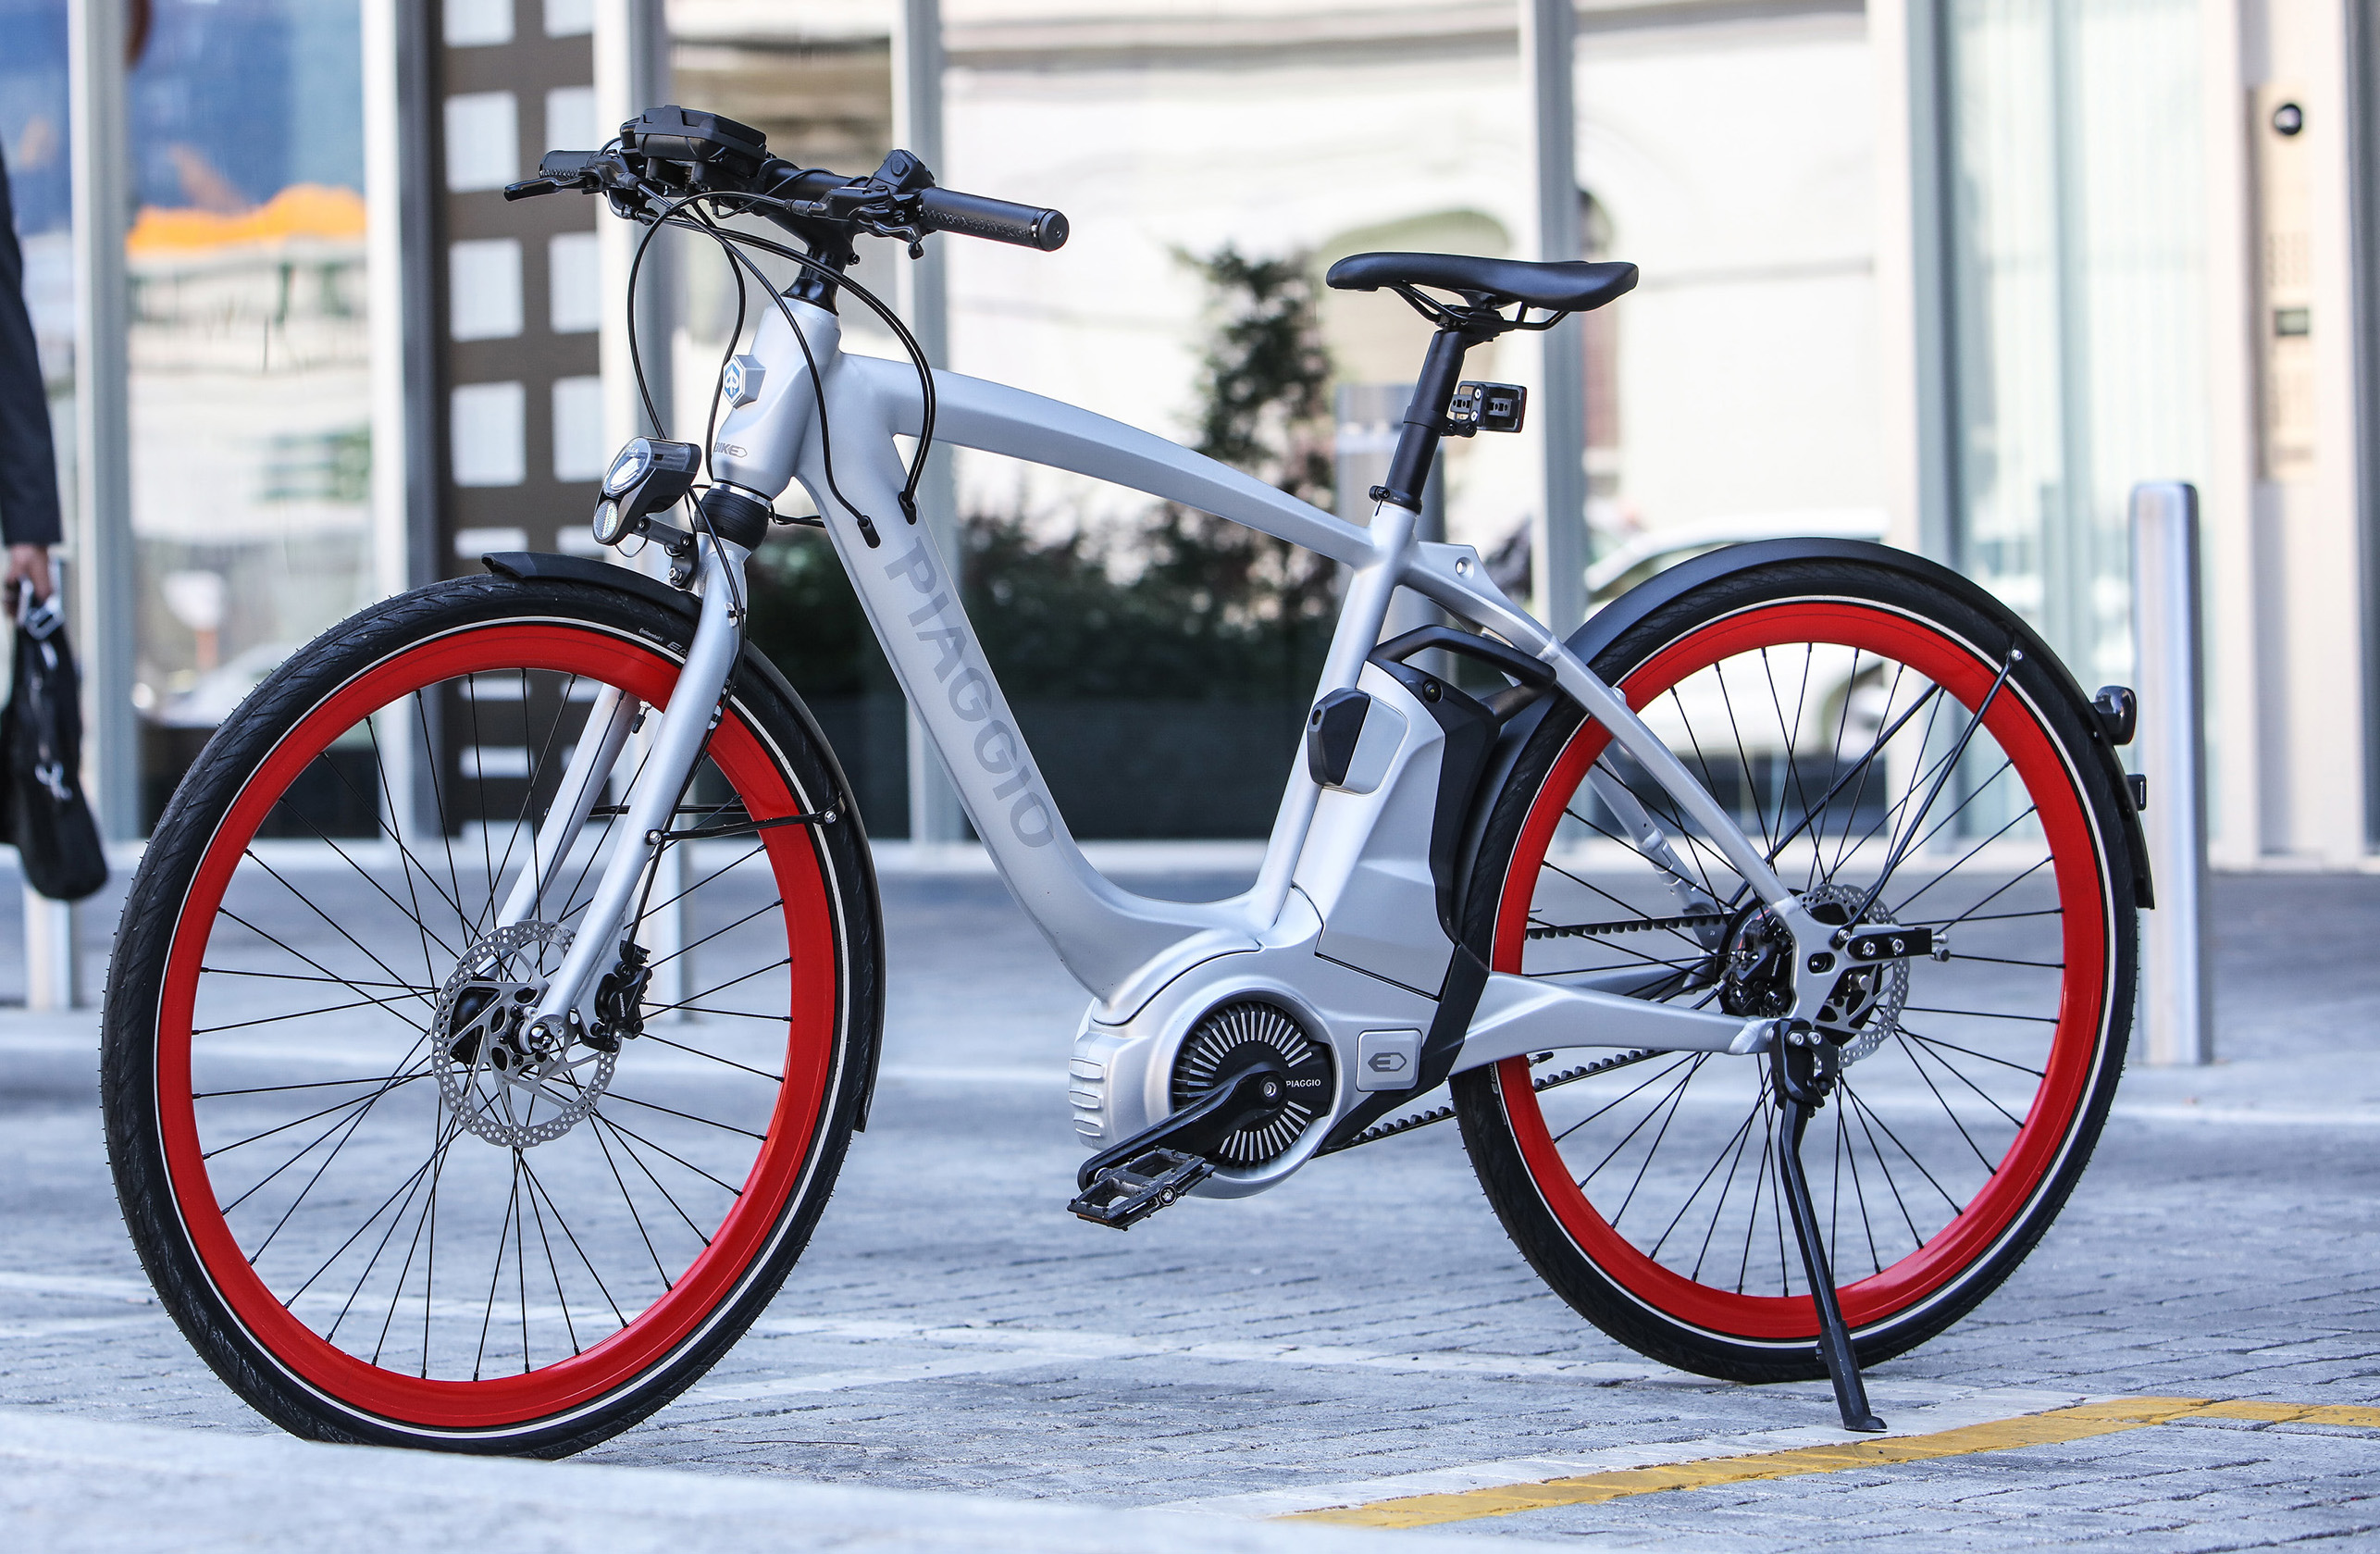 Thorns Åben lukke Wi-Bike el-cykel med unik teknologi og elegant italiensk design